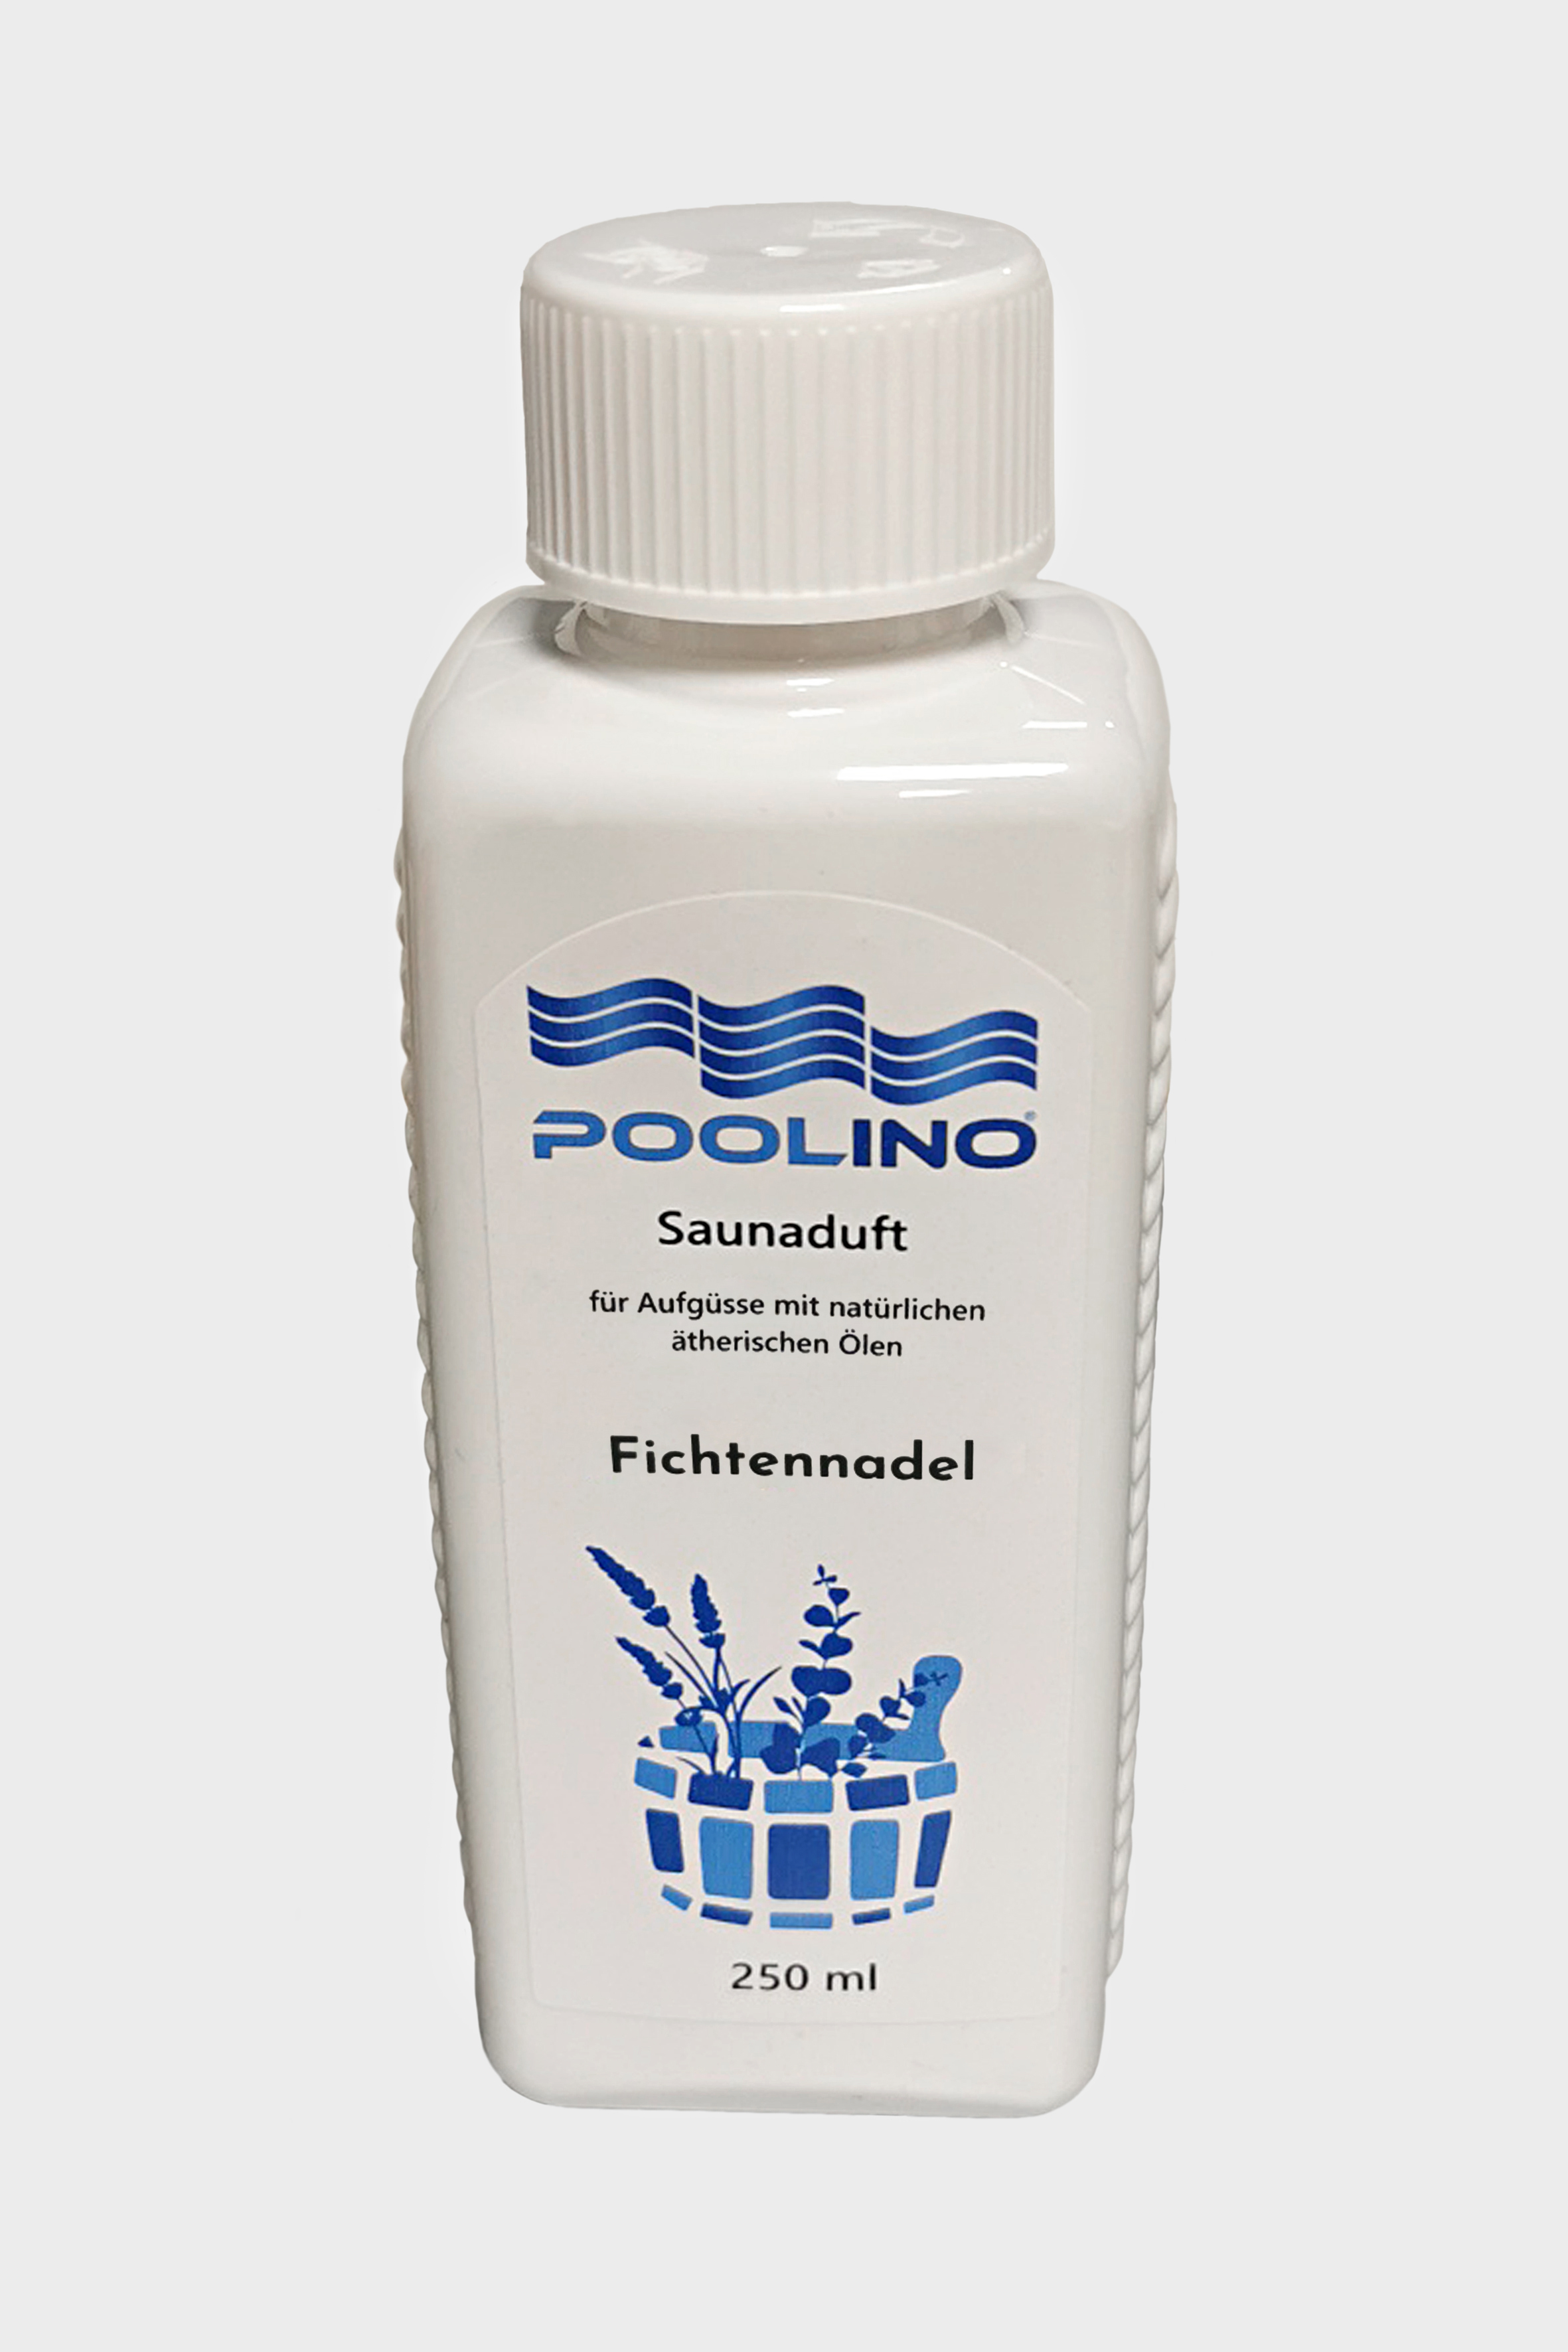 250 ml Poolino® Saunaduft Fichtennadel Aufgusskonzentrat